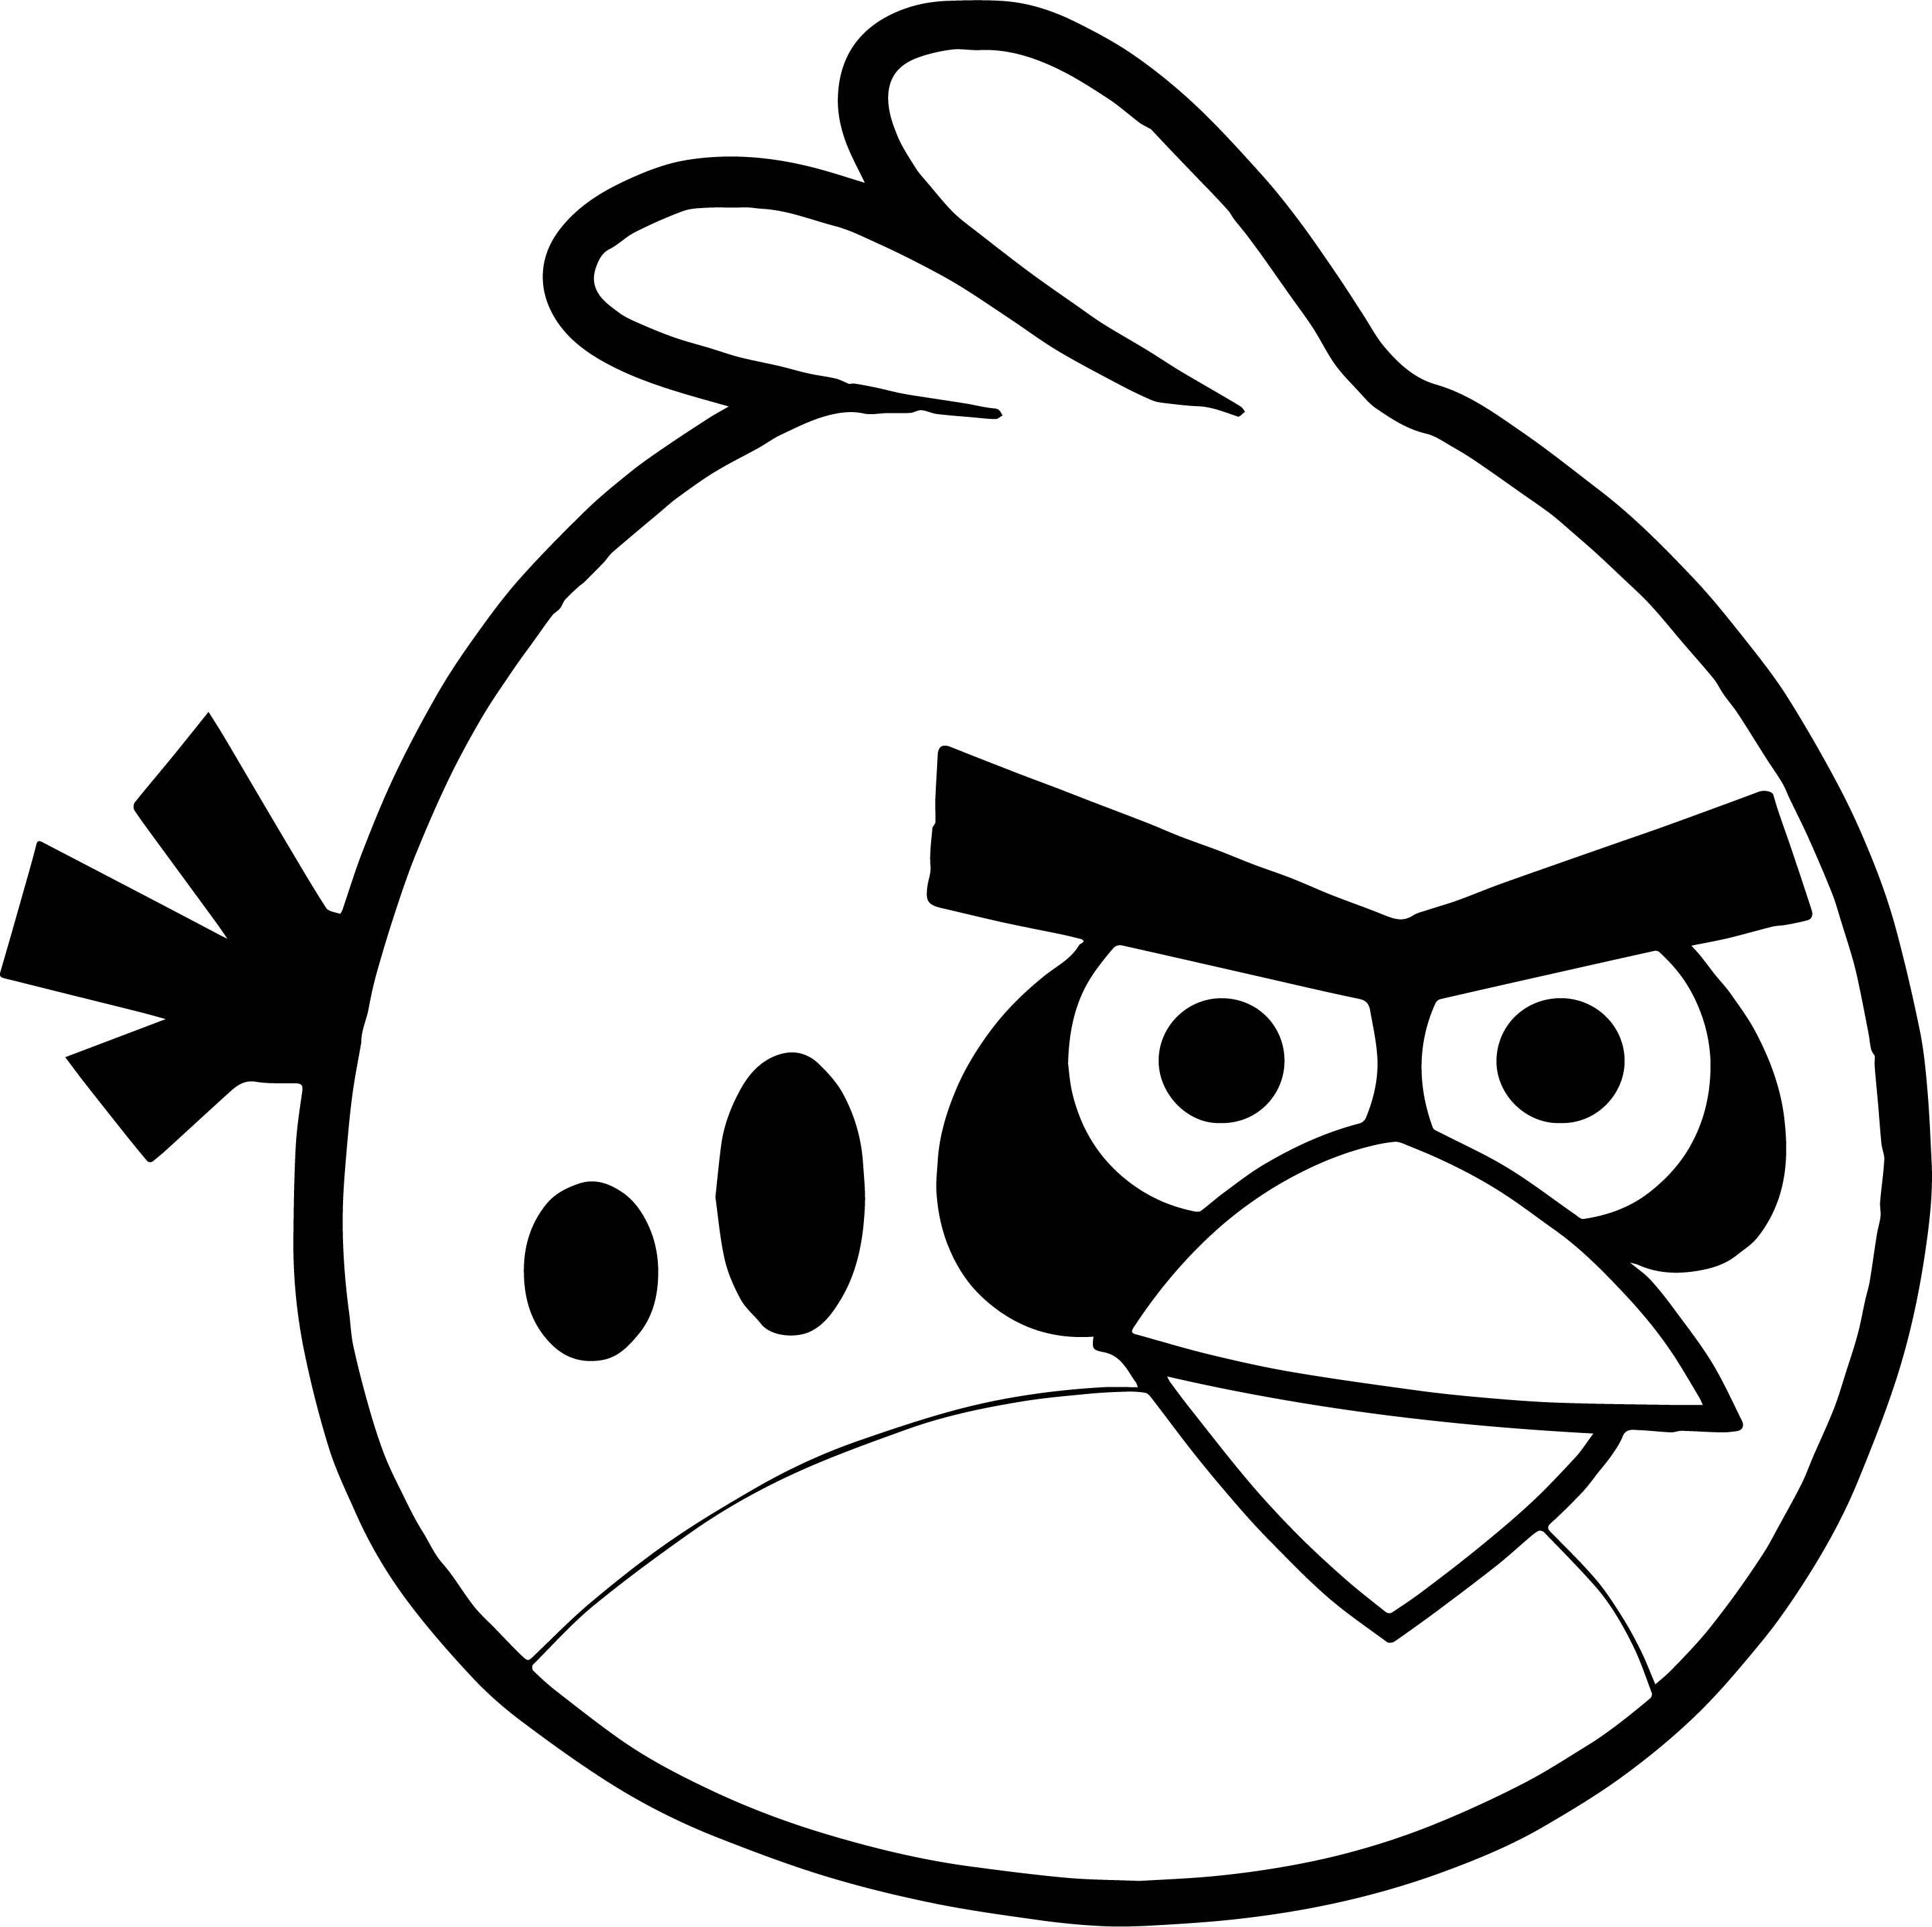 Как нарисовать энгри бердз всех птиц поэтапно. Как нарисовать Angry Birds карандашом